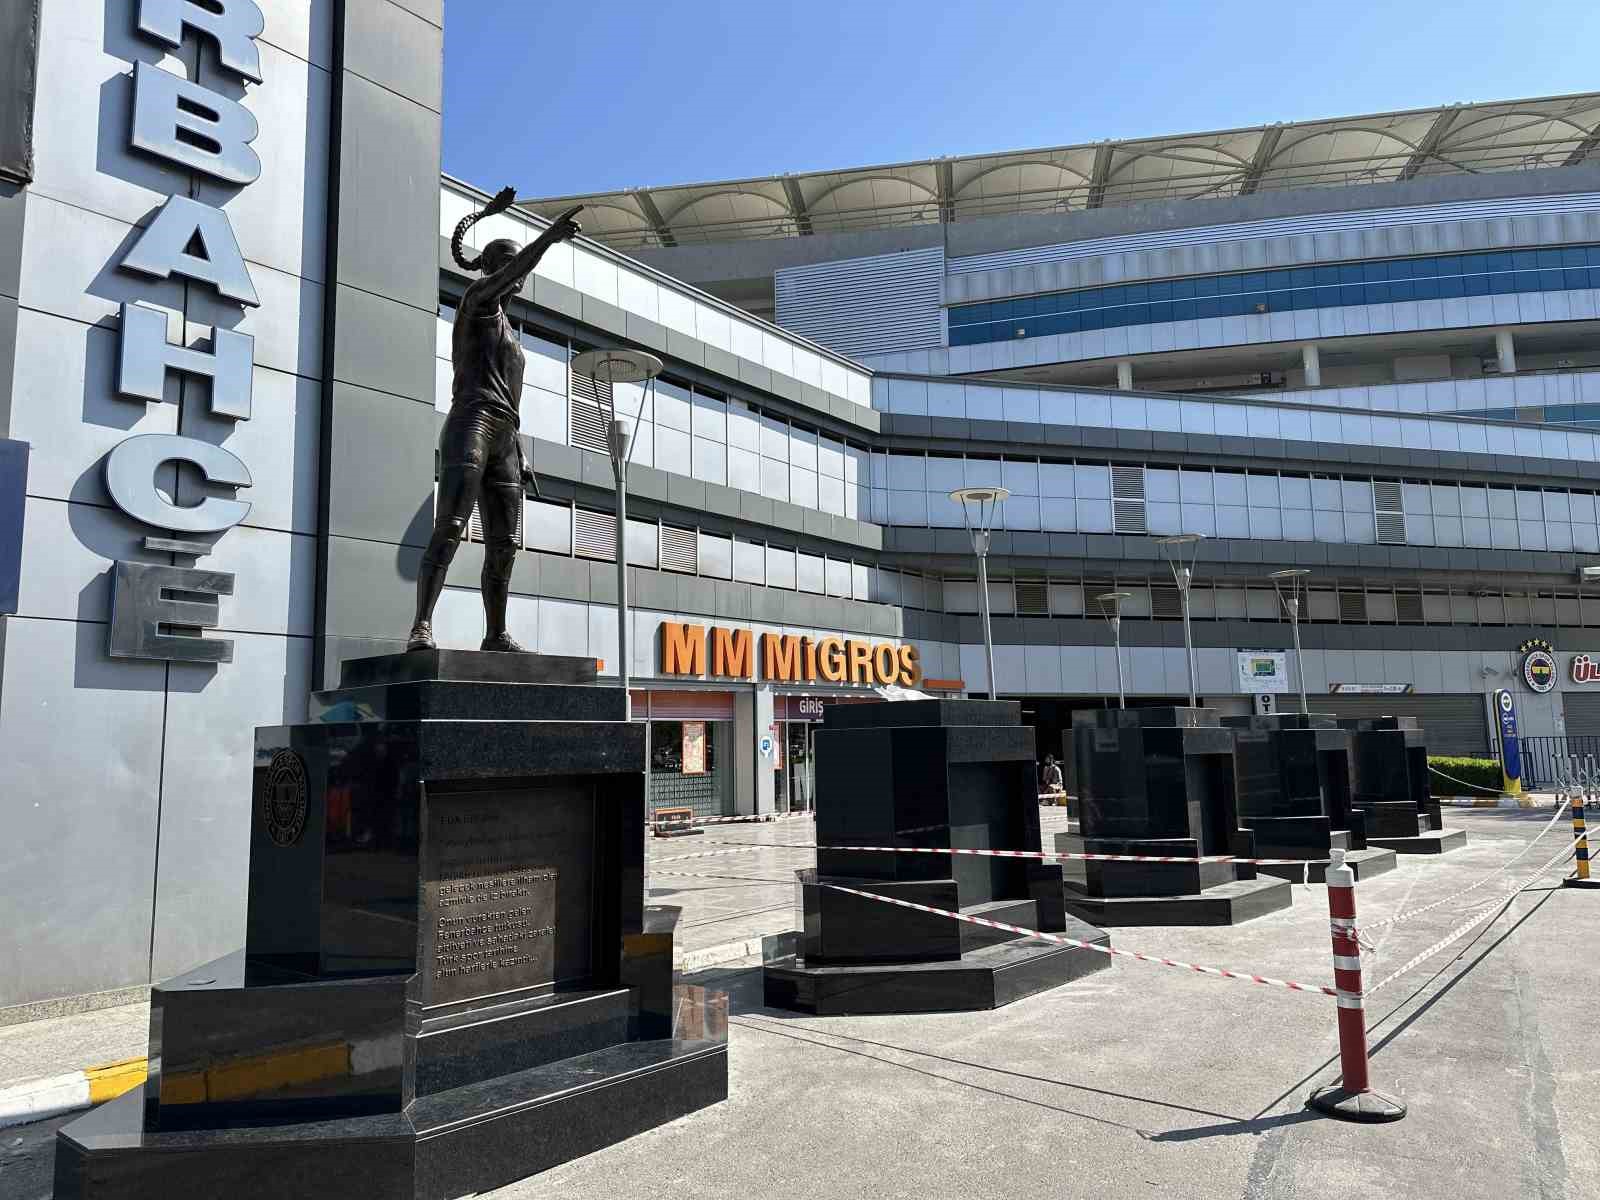 kadıköy’de fenerbahçe’nin efsane futbolcularının heykelleri kaldırıldı